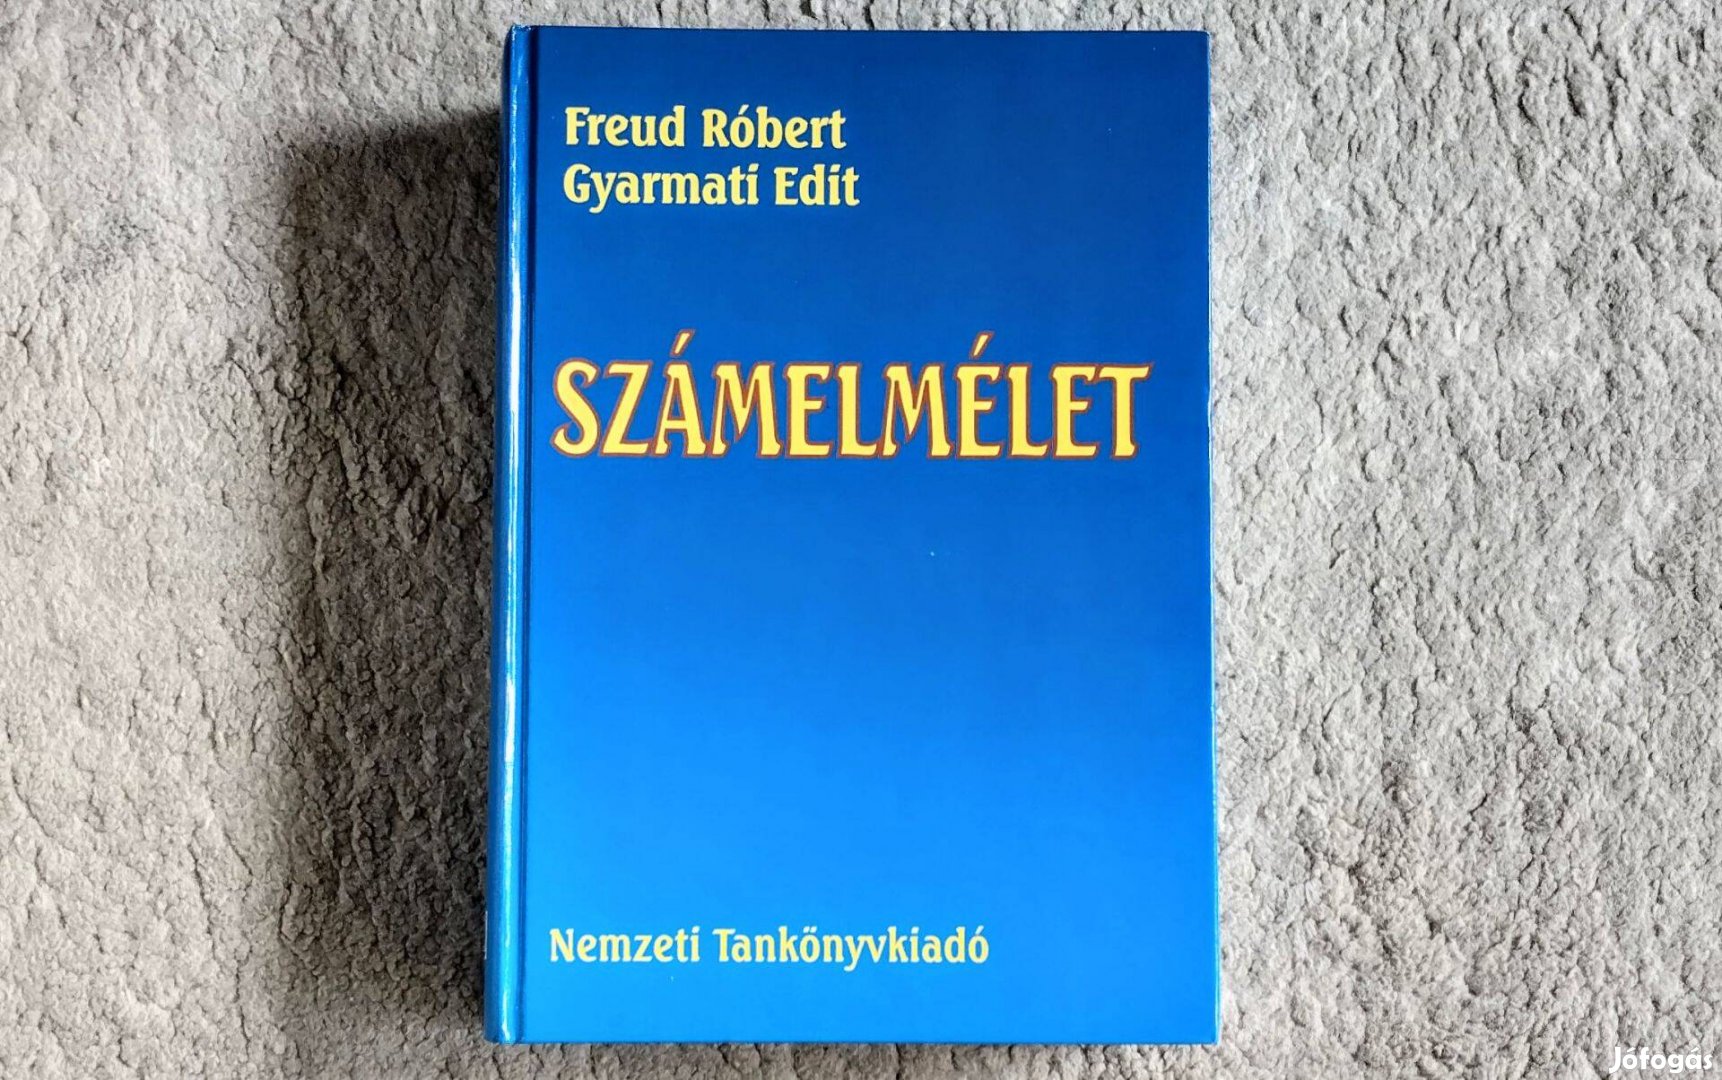 Számelmélet - Freud Róbert, Gyarmati Edit 2. javított, bővített kiadás